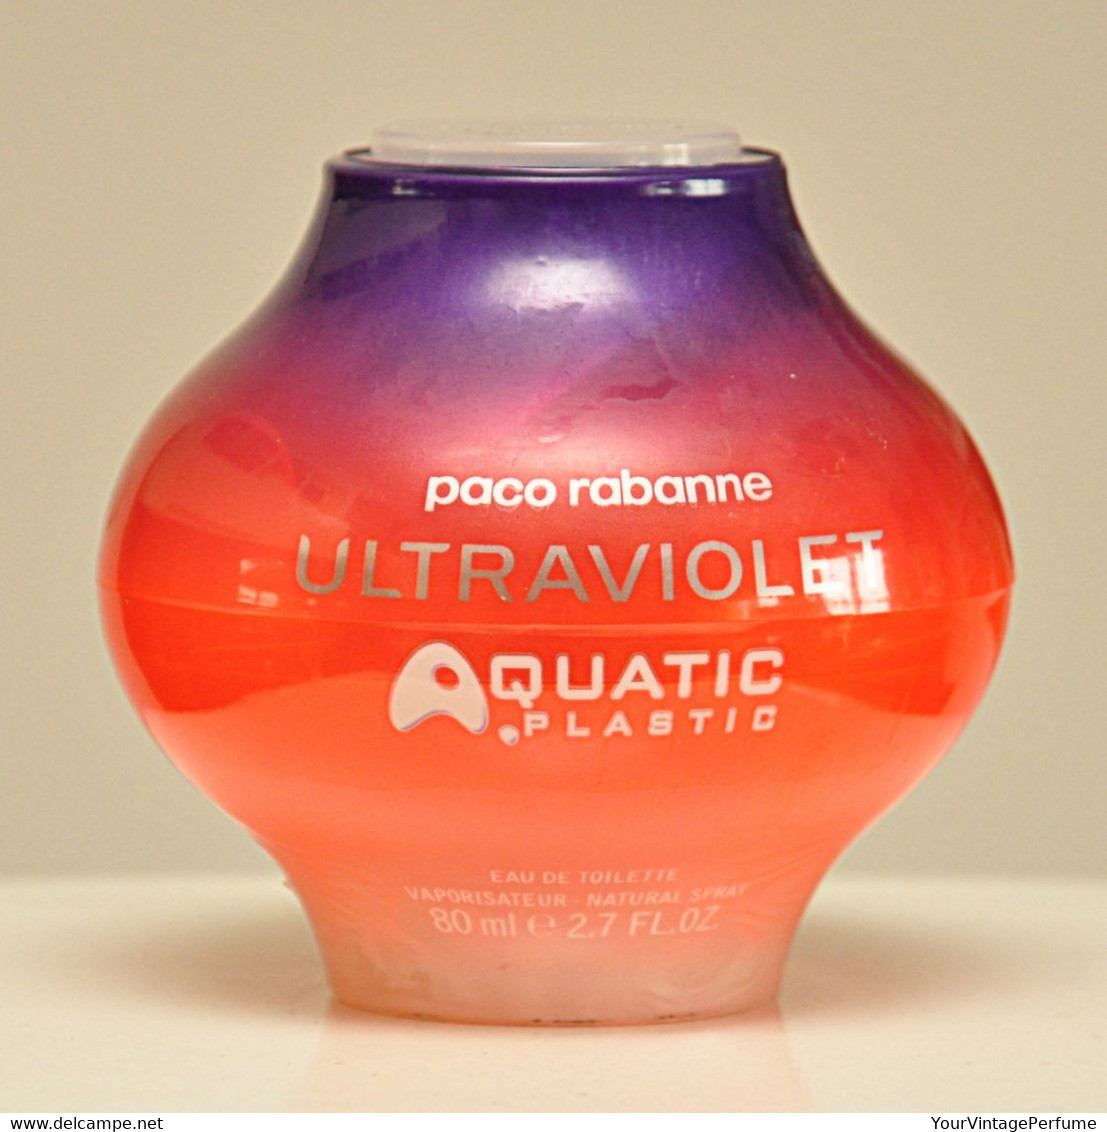 Paco Rabanne Ultraviolet Aquatic Plastic Eau De Toilette Edt 80ml 2.7 Fl. Oz. Spray Perfume For Woman Rare Vintage 2002 - Femme